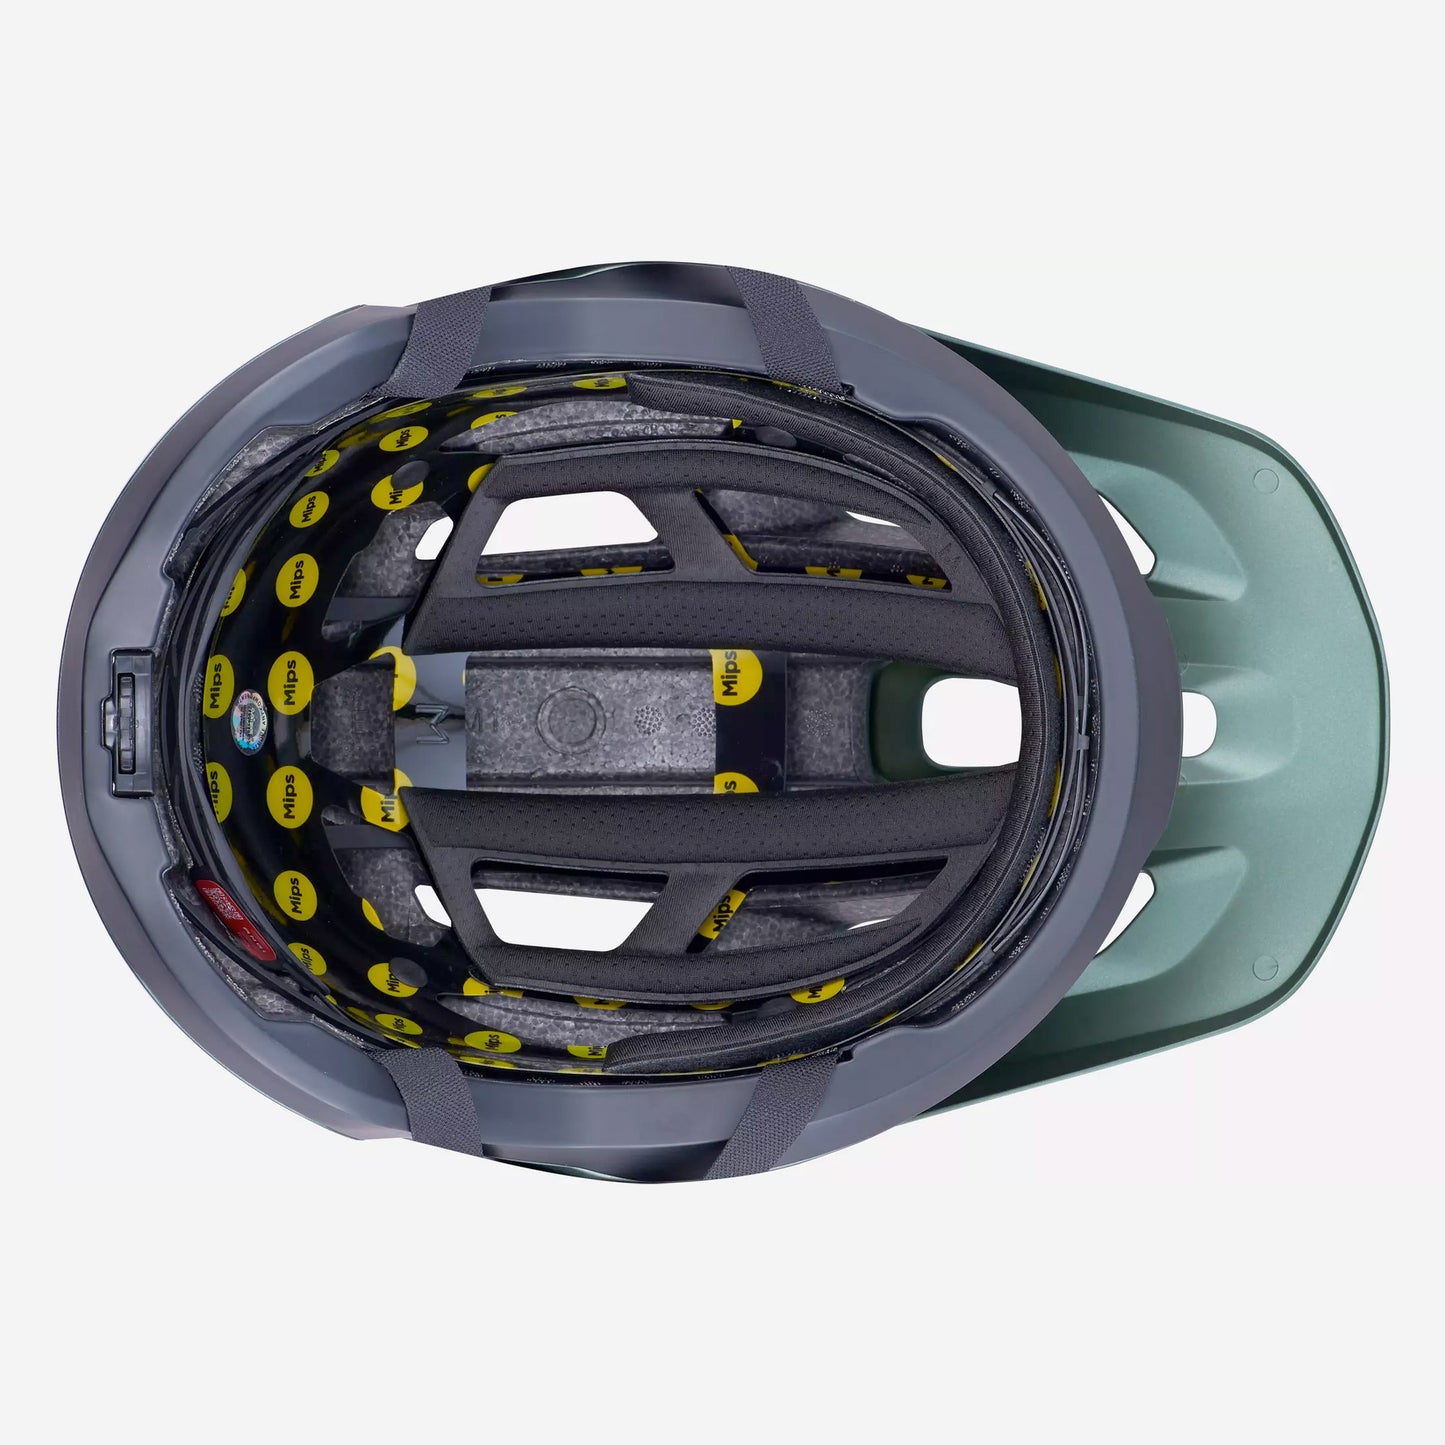 Specialized Tactic 4 Unisex Mountain Bike Helmet - Oak Green